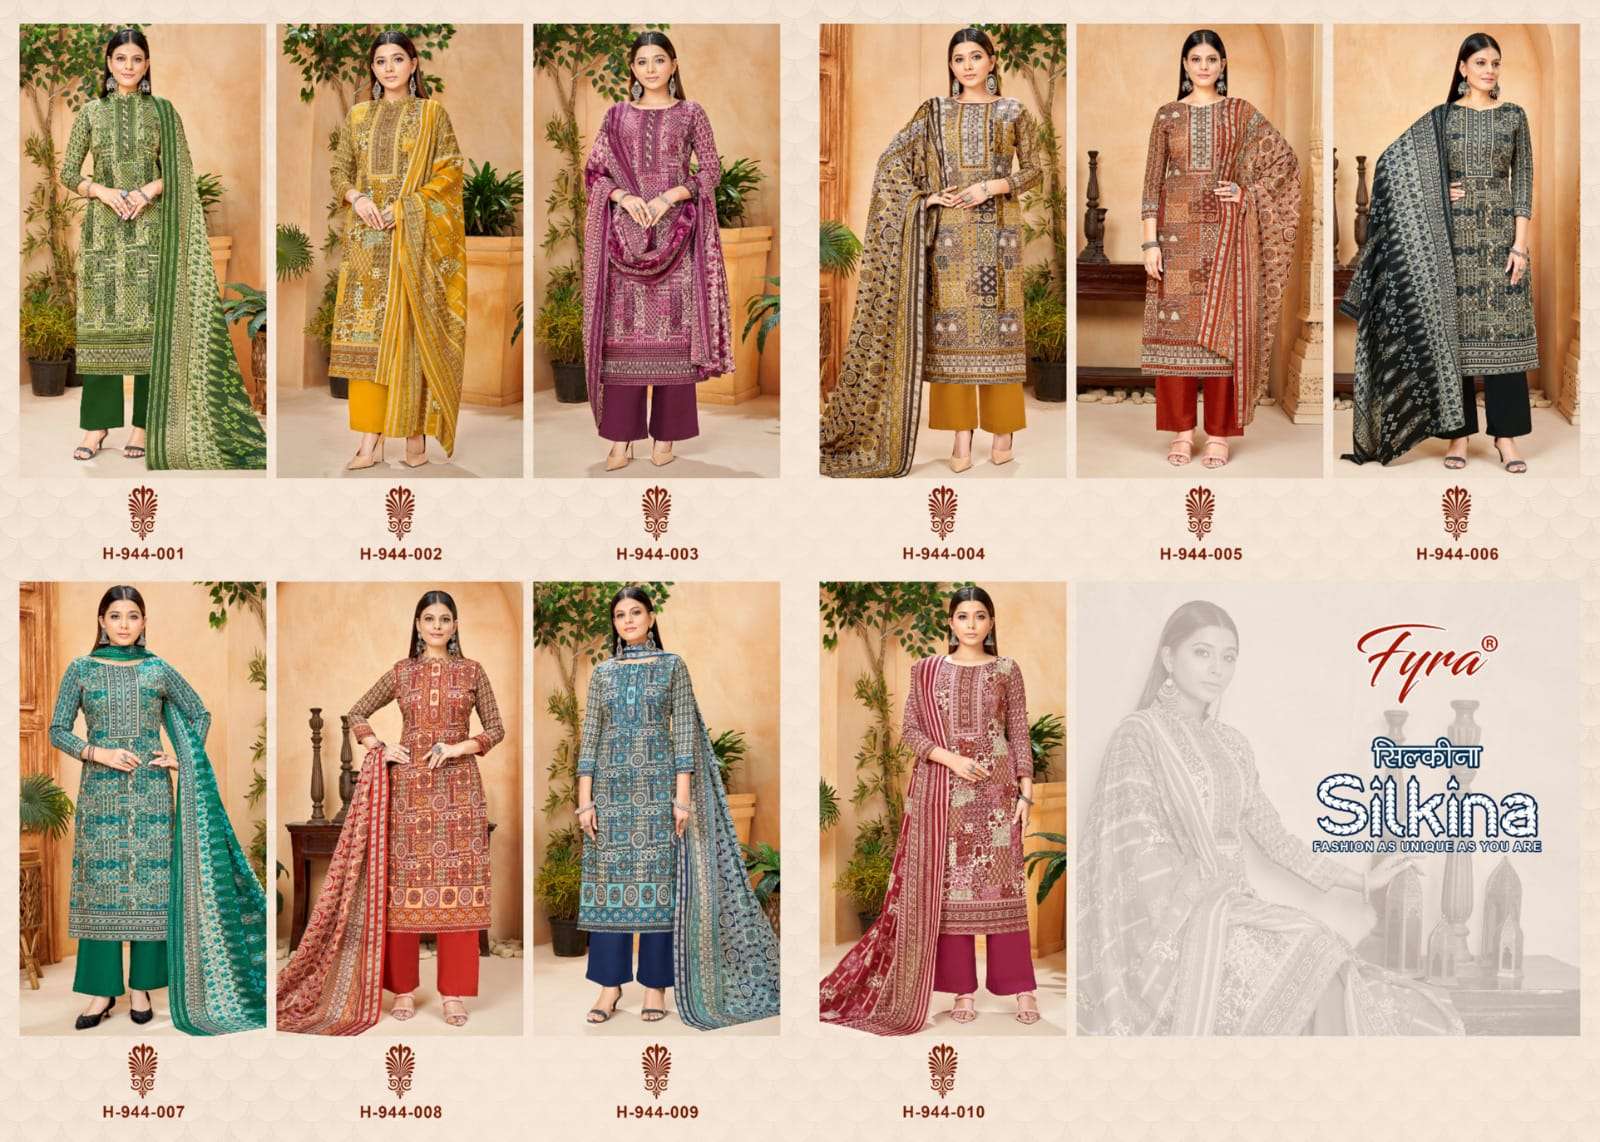 fyra designing silkina pure soft cotton punjabi salwar kameez wholesale price surat